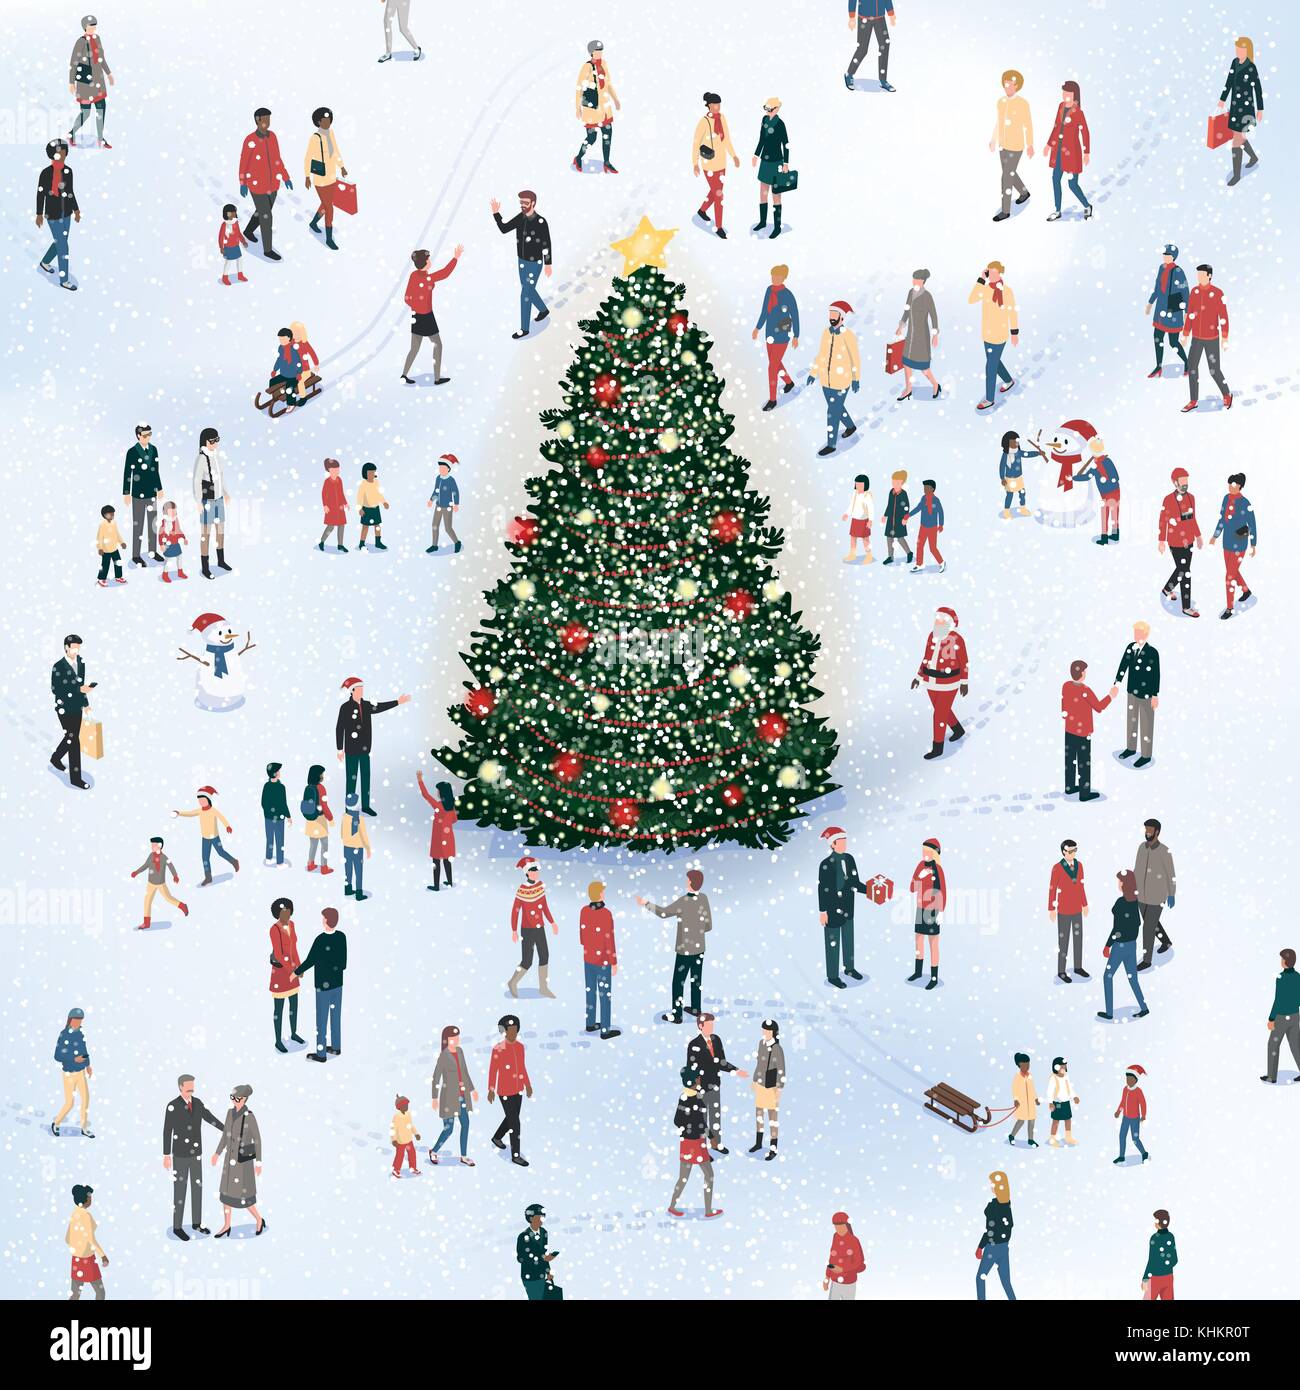 Foule de personnes qui se groupent autour de l'arbre de Noël sous la neige et de célébrer ensemble, carte de Noël Illustration de Vecteur